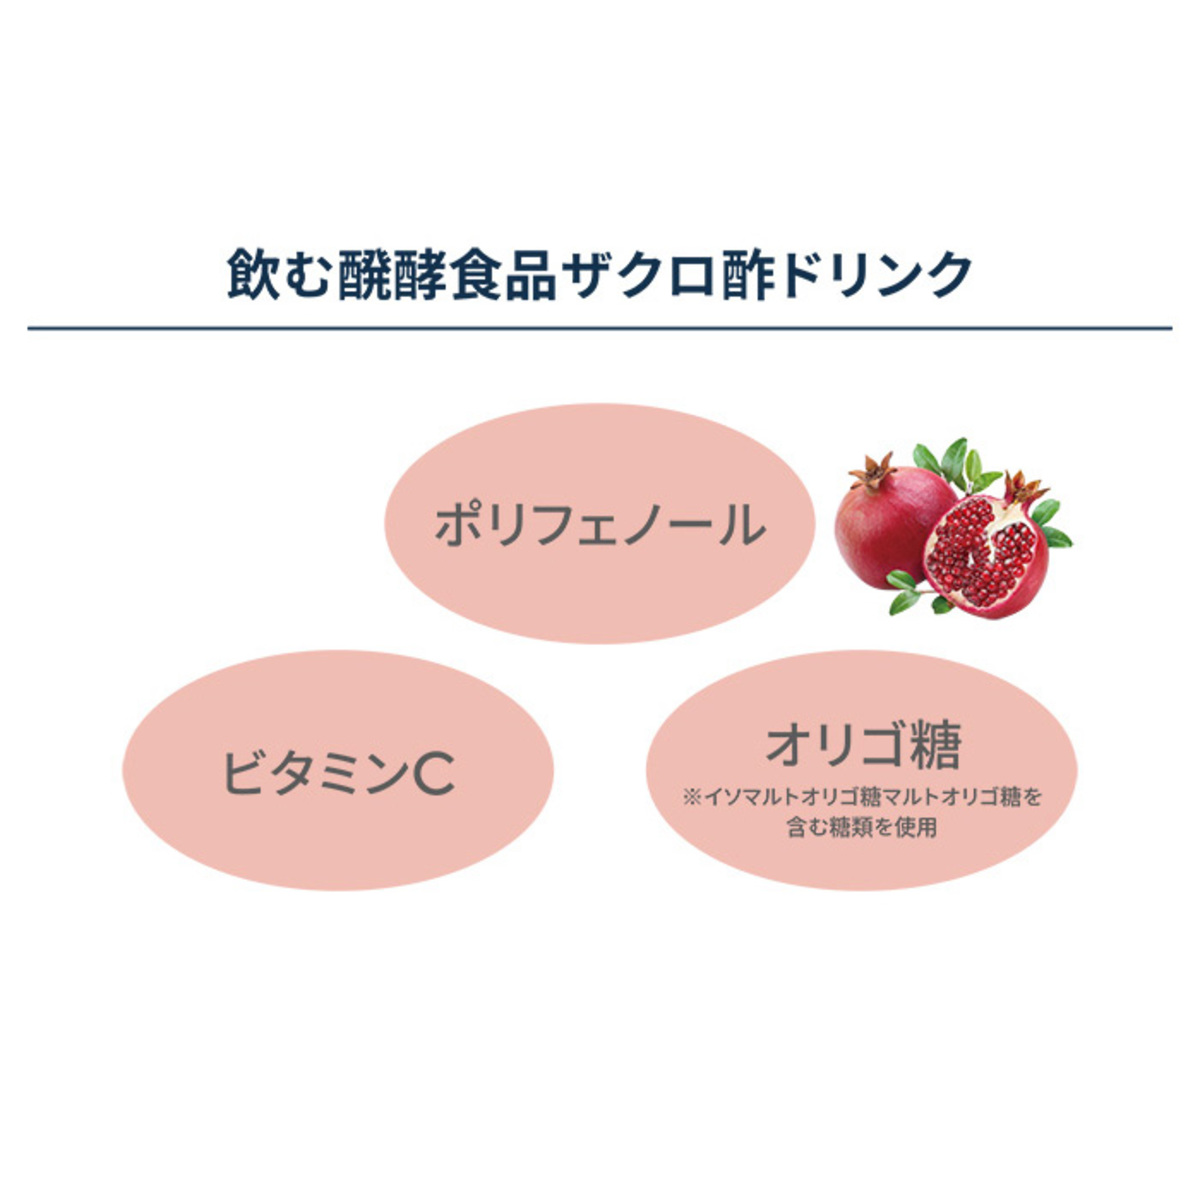 Jノリツグ スーパープレミアムザクロ酢 4本セット - QVC.jp